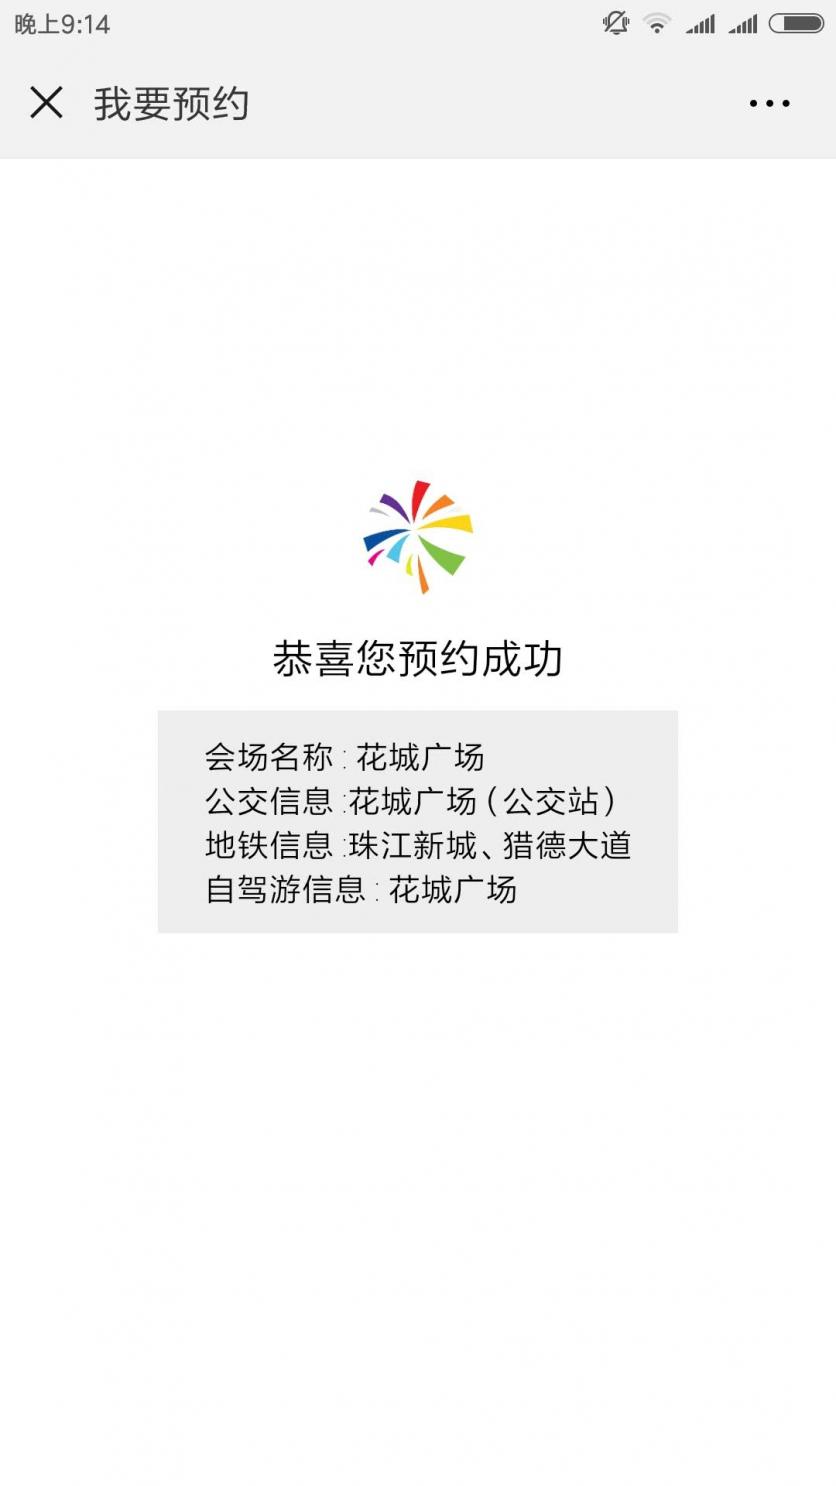 广州花城广场灯光音乐秀2019年2月1日至2月19日 预约攻略